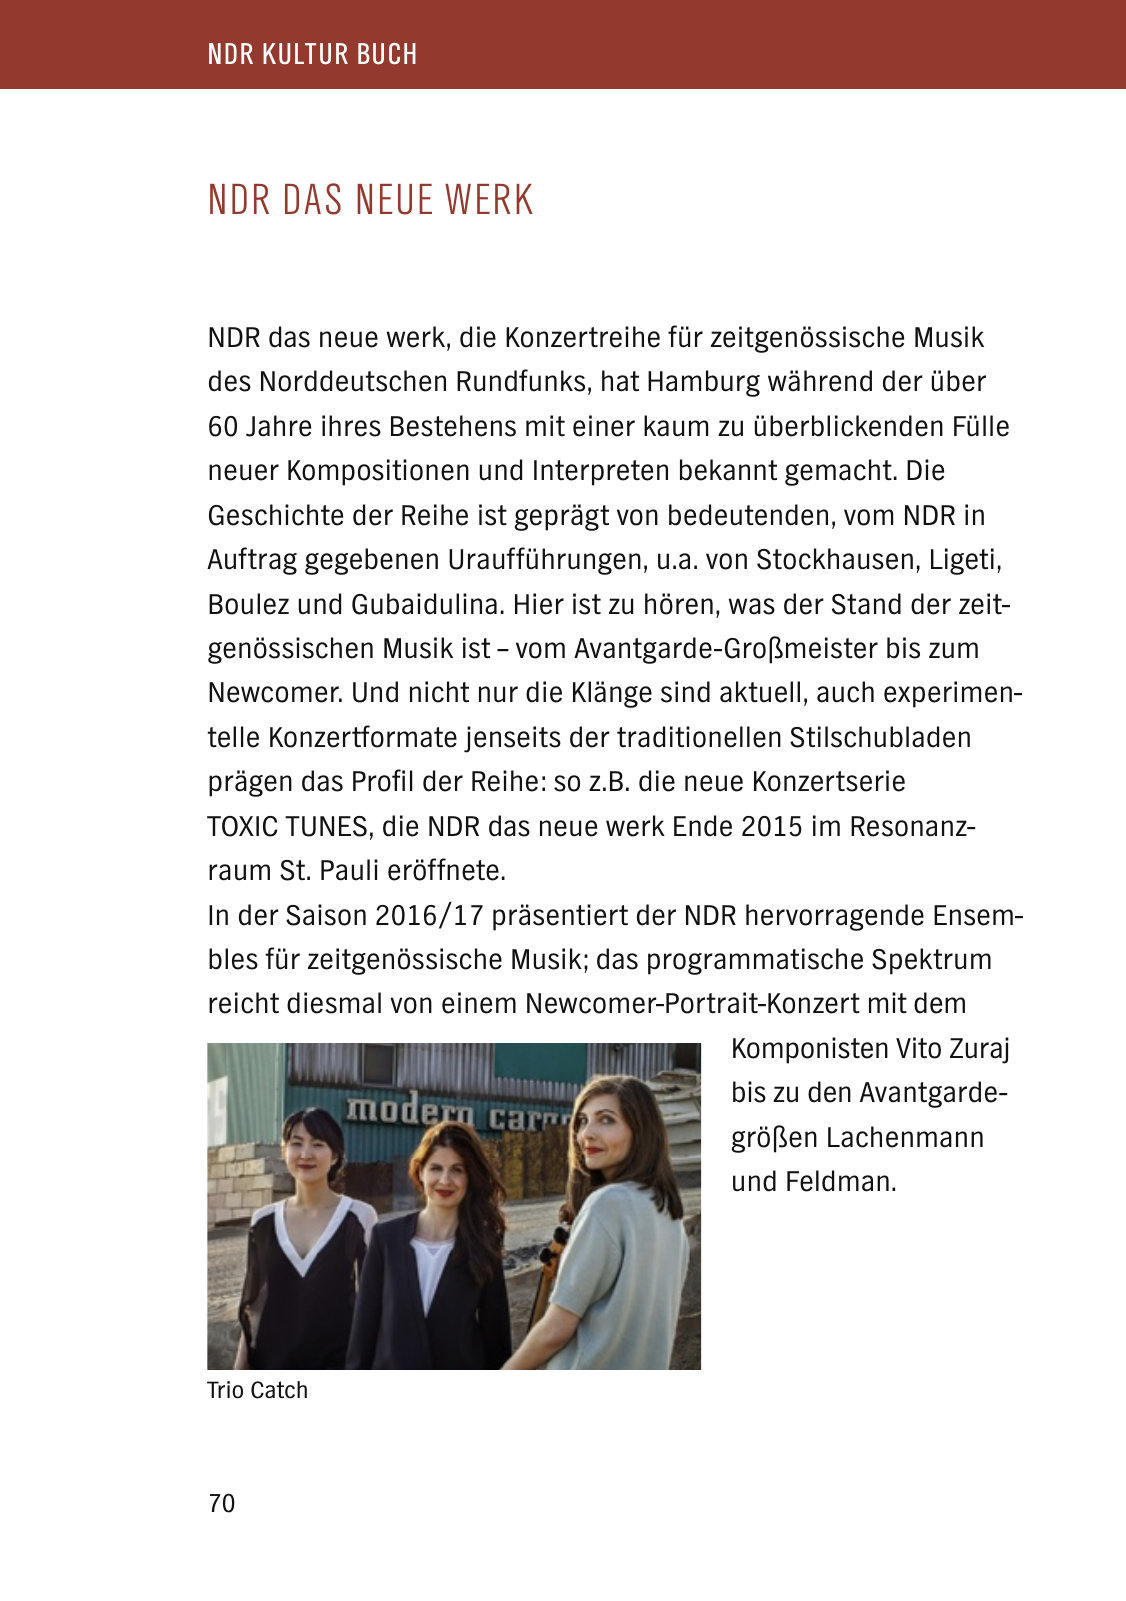 Vorschau NDR Kultur Buch 2017 Seite 72